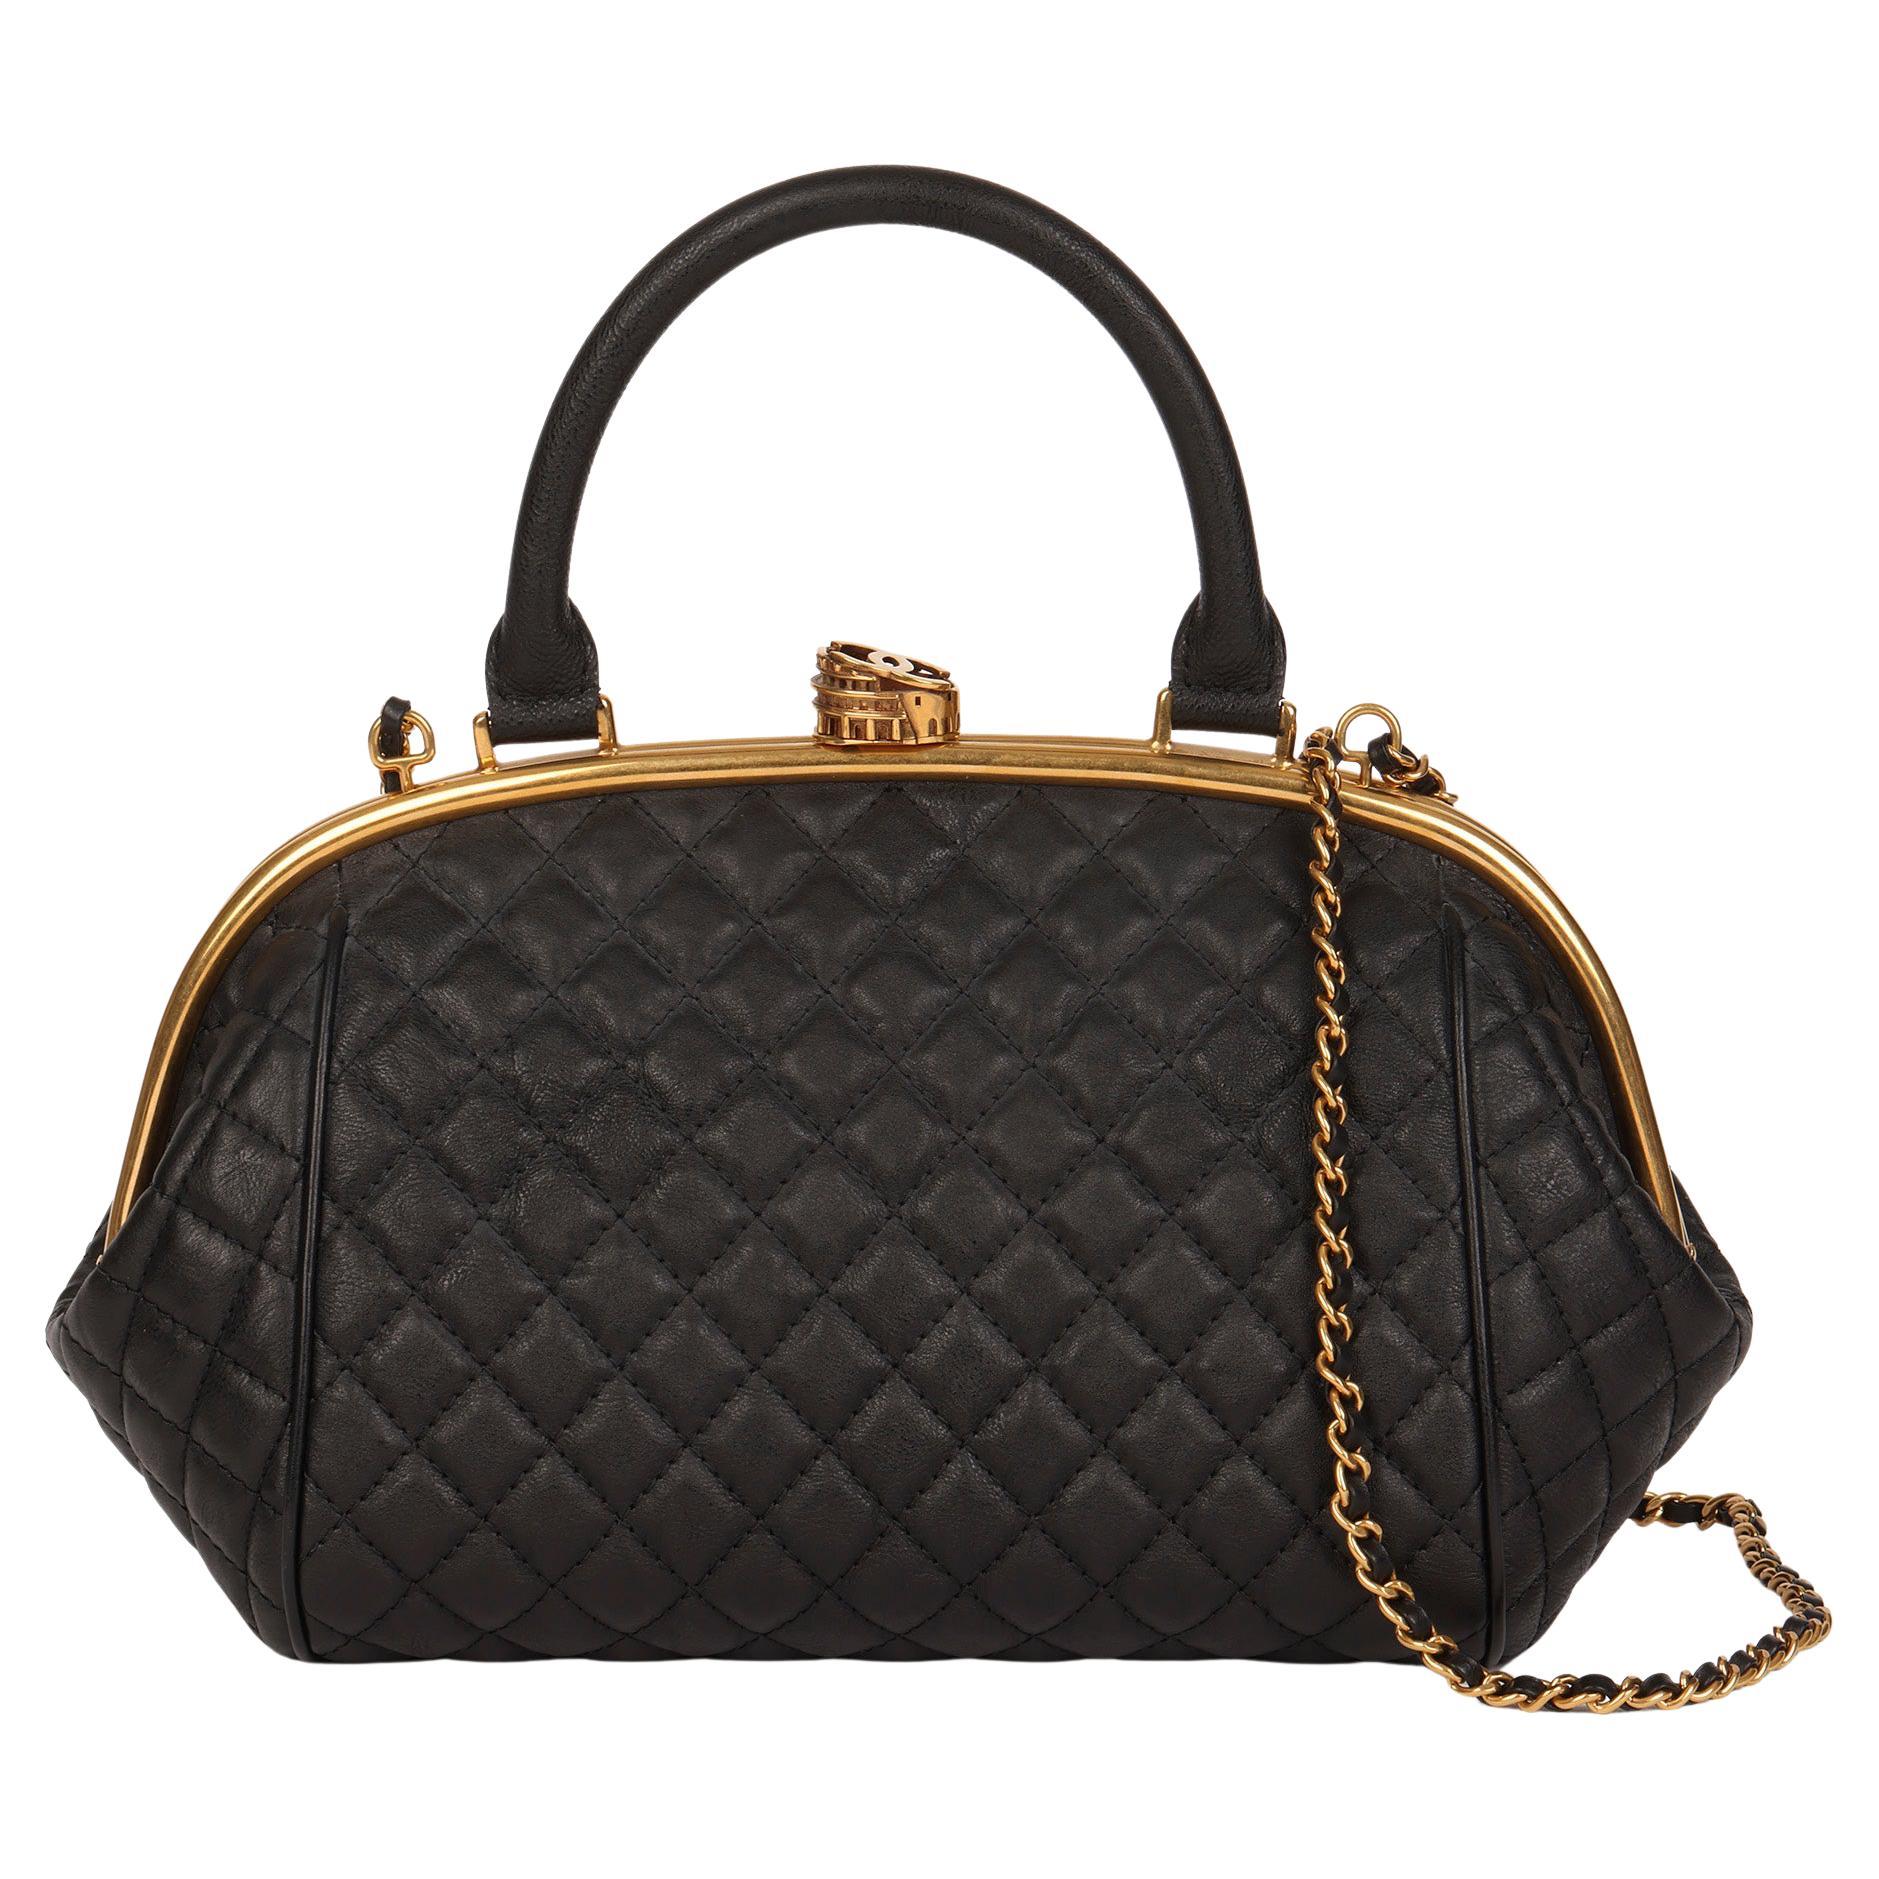 Chanel Black Alligator Kisslock Frame Clutch Shoulder Bag with Chain Antiqued Gold Hardware, 2015 (Very Good)